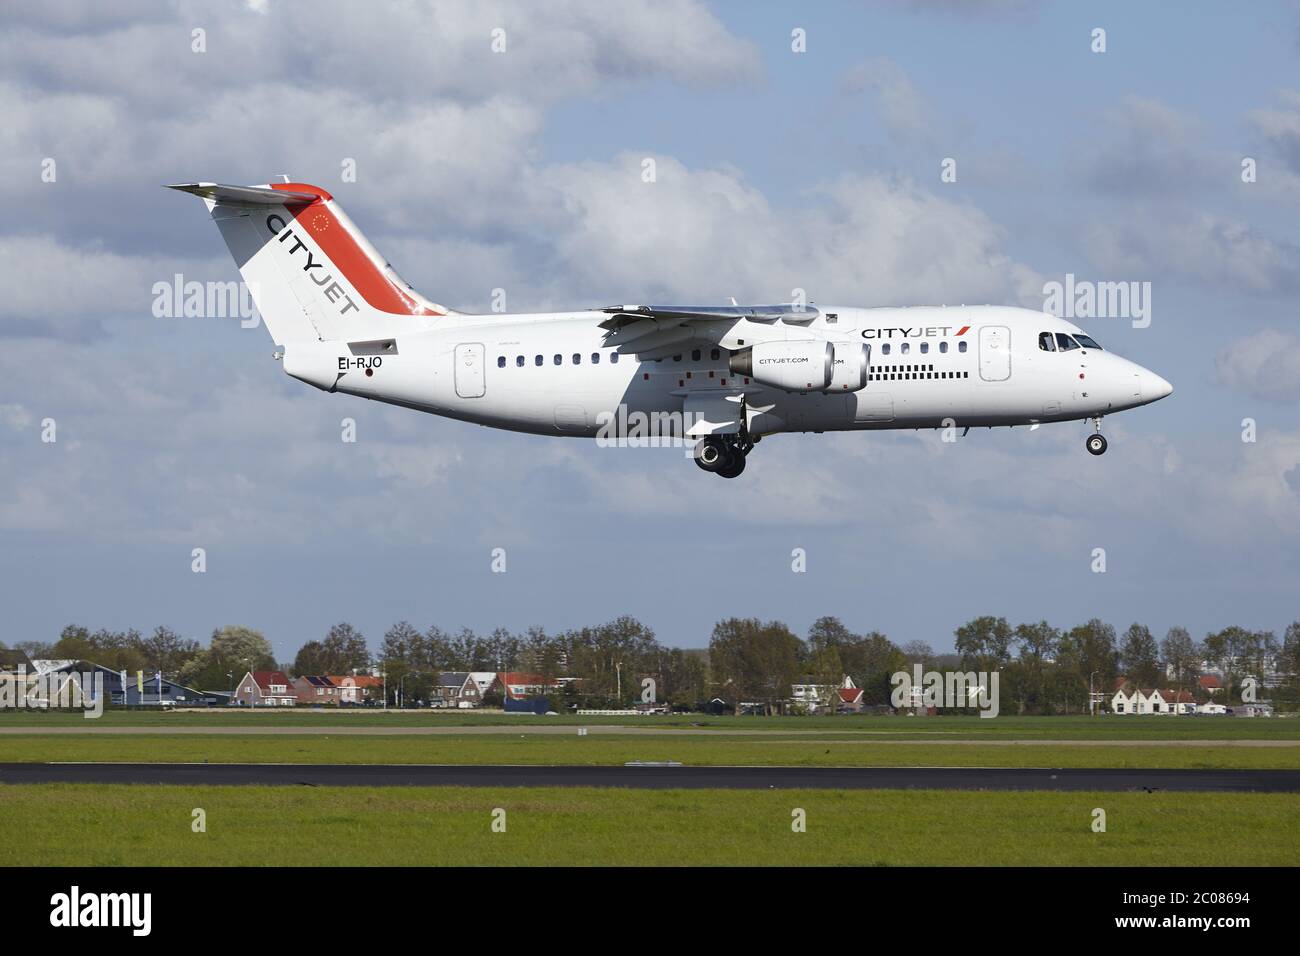 Aeroporto di Amsterdam Schiphol - Avro RJ85 da CityJet Land Foto Stock